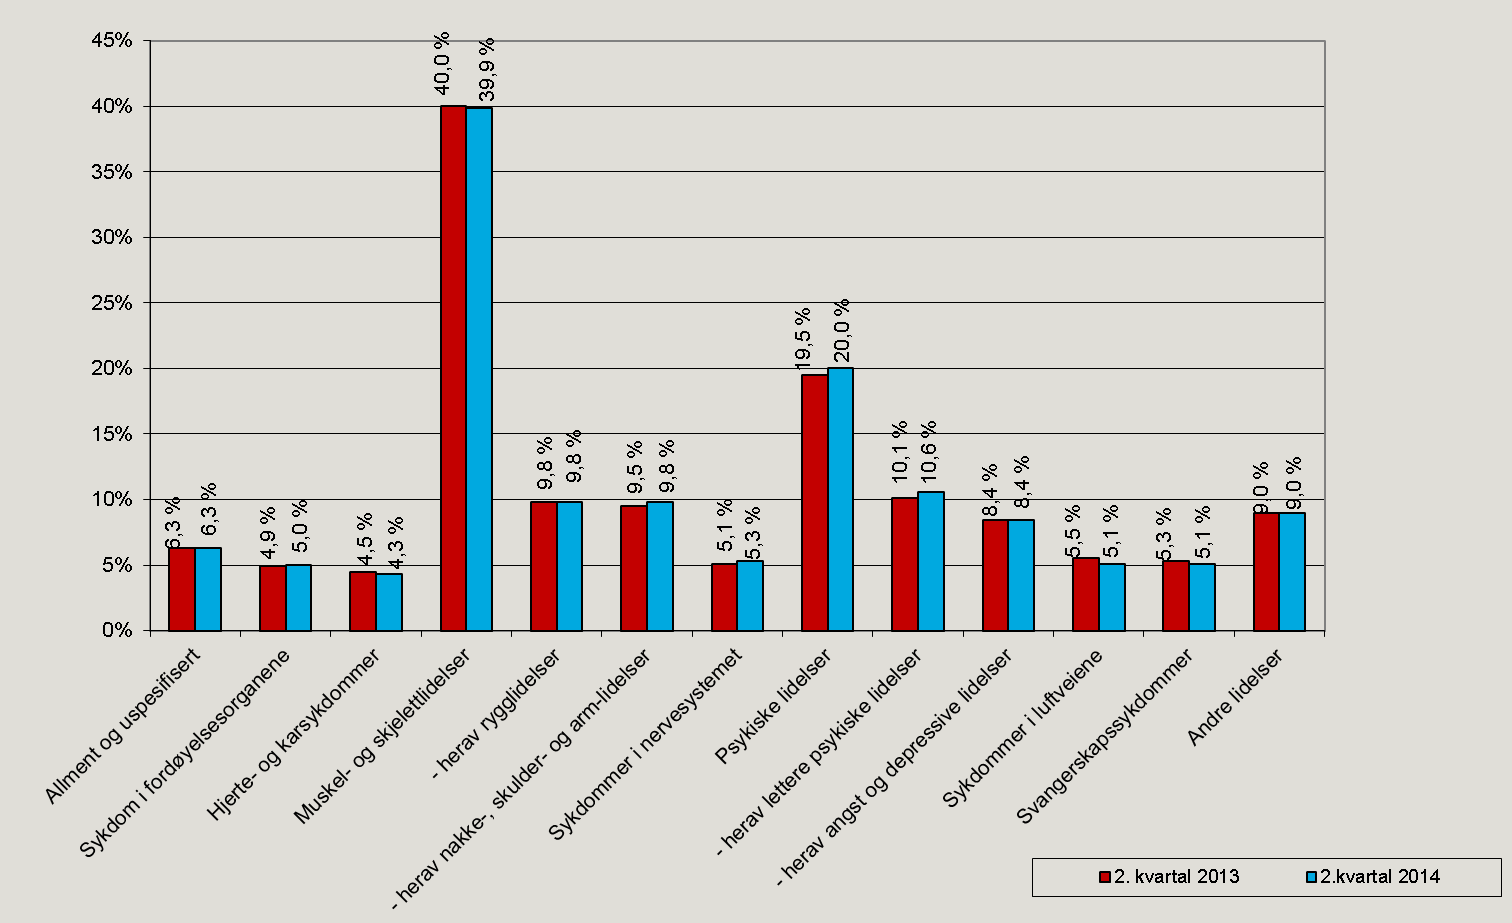 Figur 12. Legemeldte sykefraværsdagsverk etter diagnose, 2. kvartal 2013 og 2. kvartal 2014. Prosent.